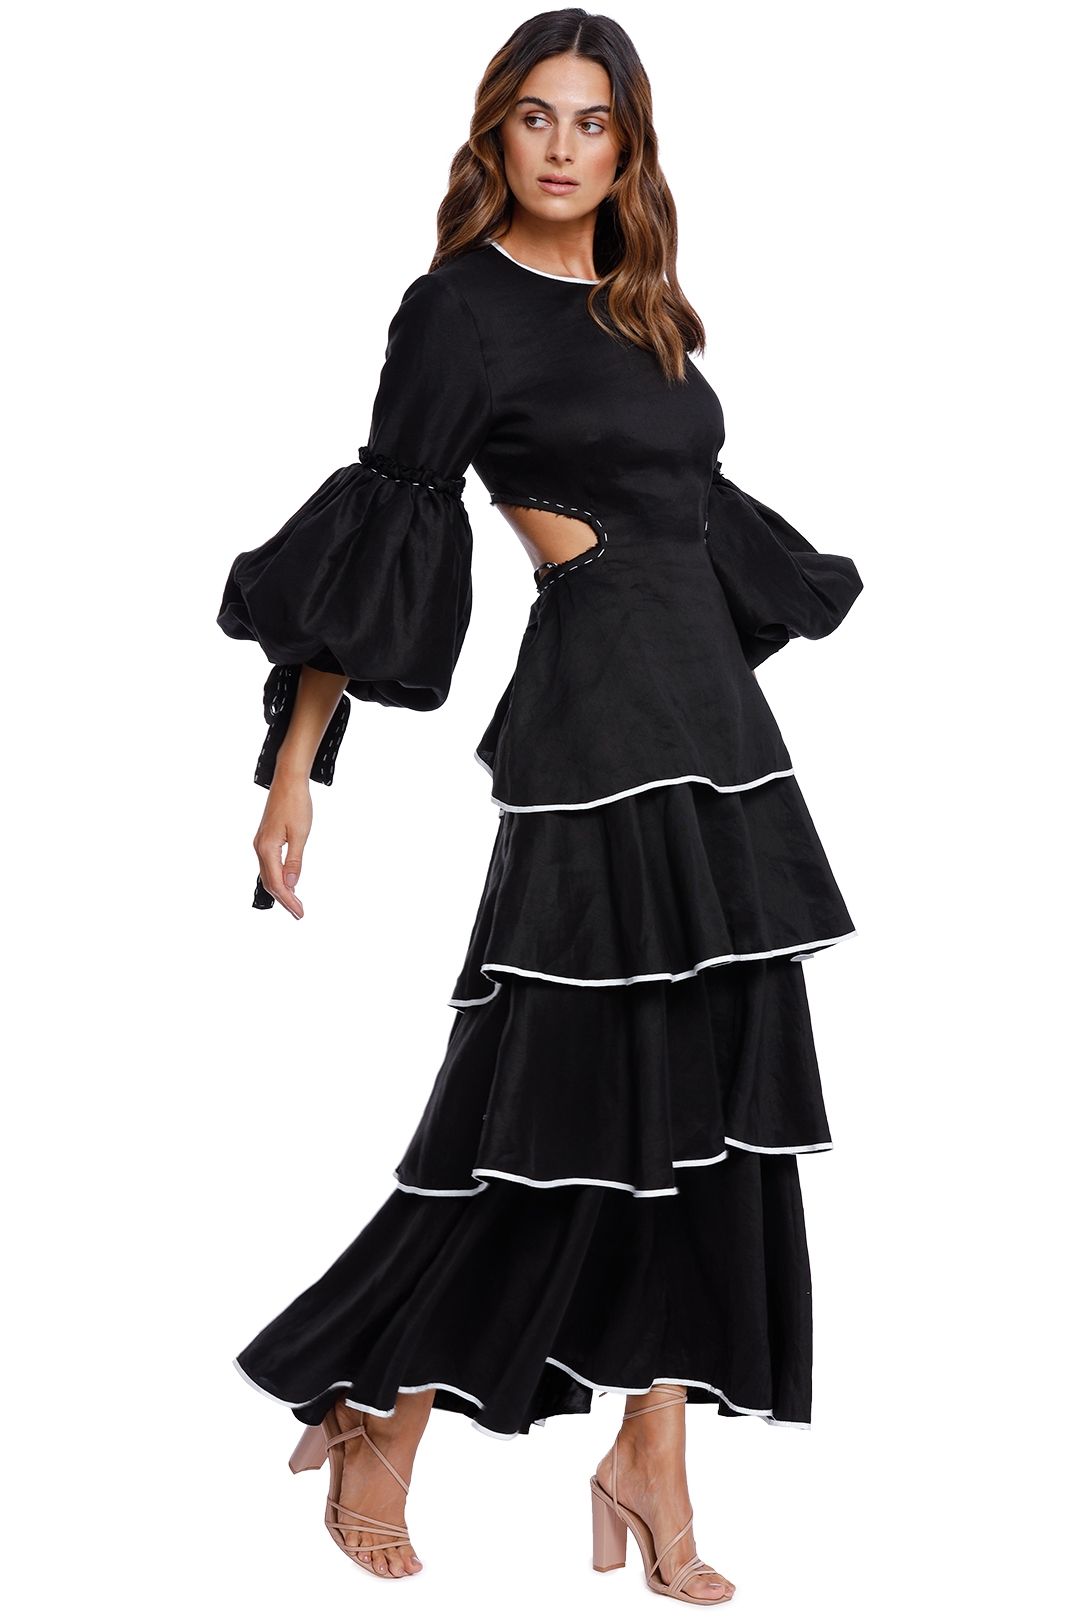 AJE Gracious Cut Out Dress black white